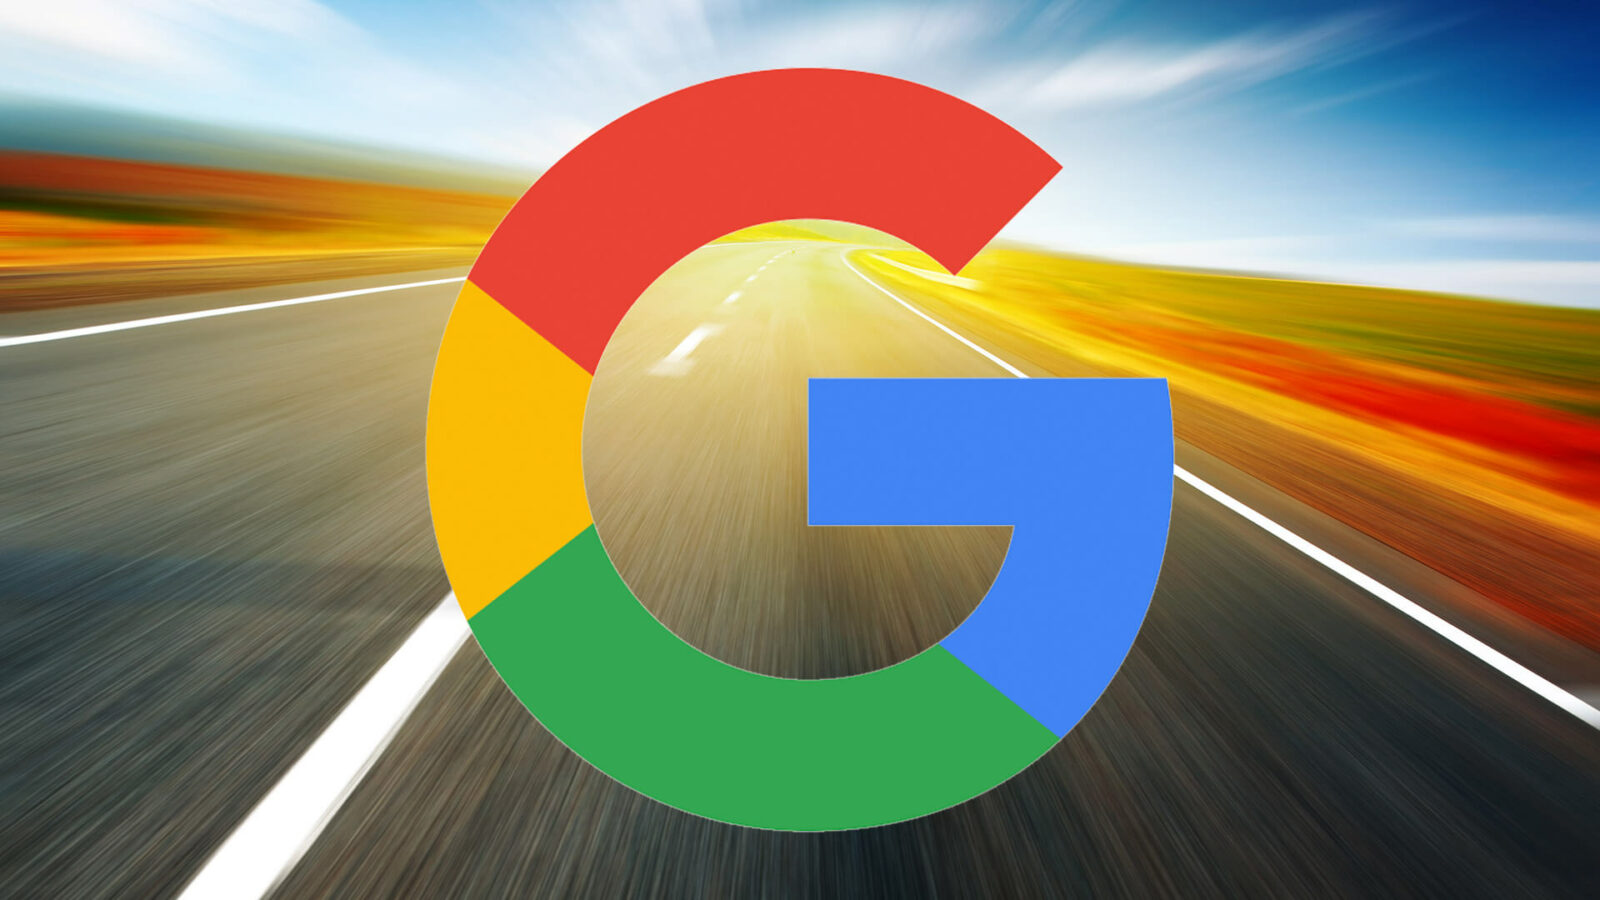 antitrust violation against Google